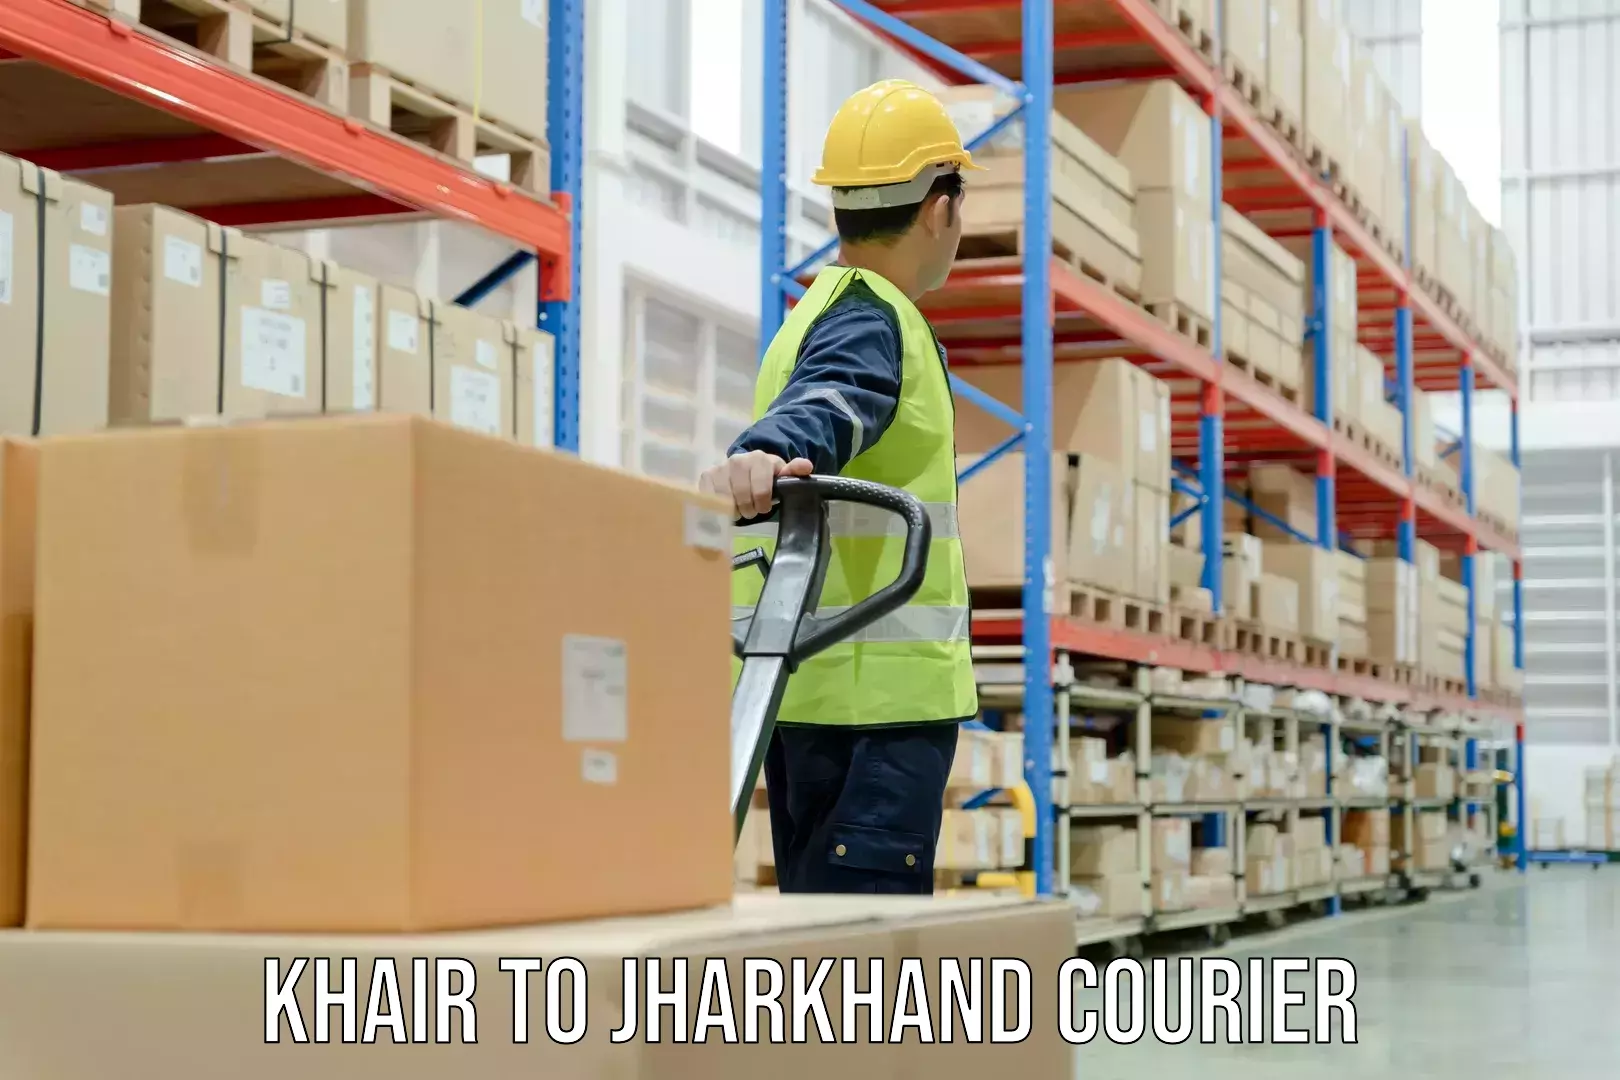 Express package handling Khair to Jharkhand